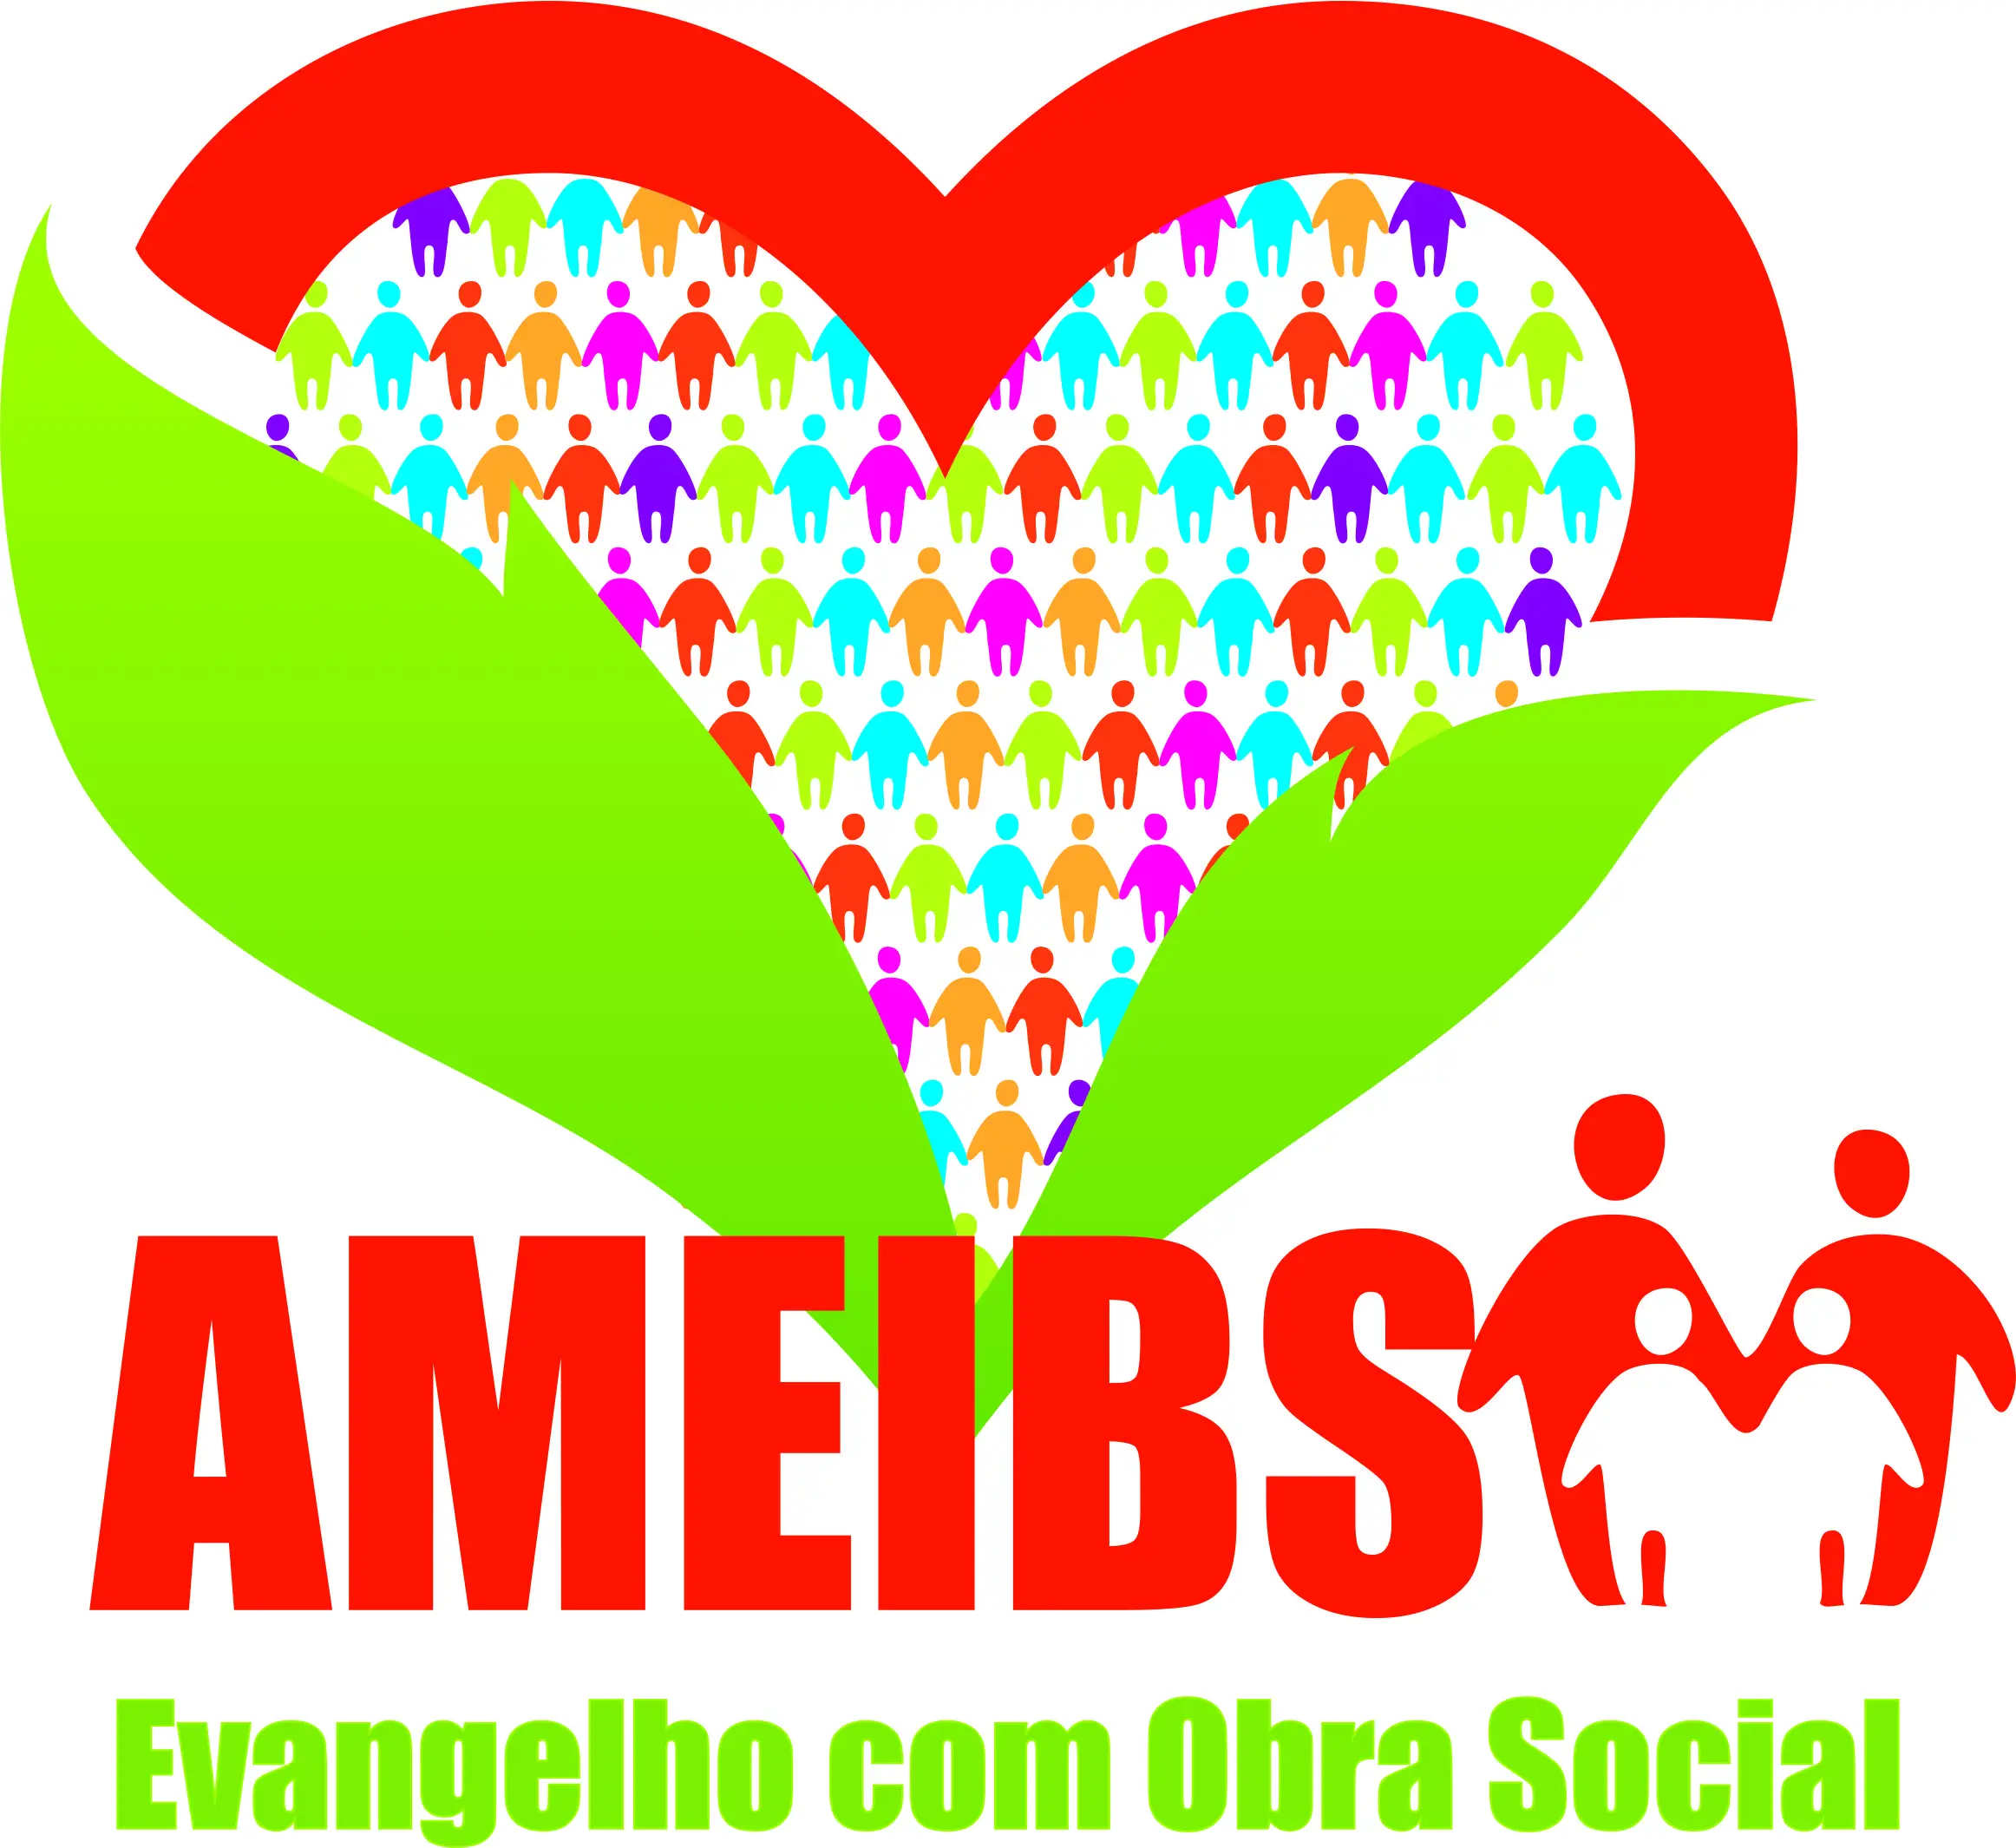 Ameibs-Logo-oficial